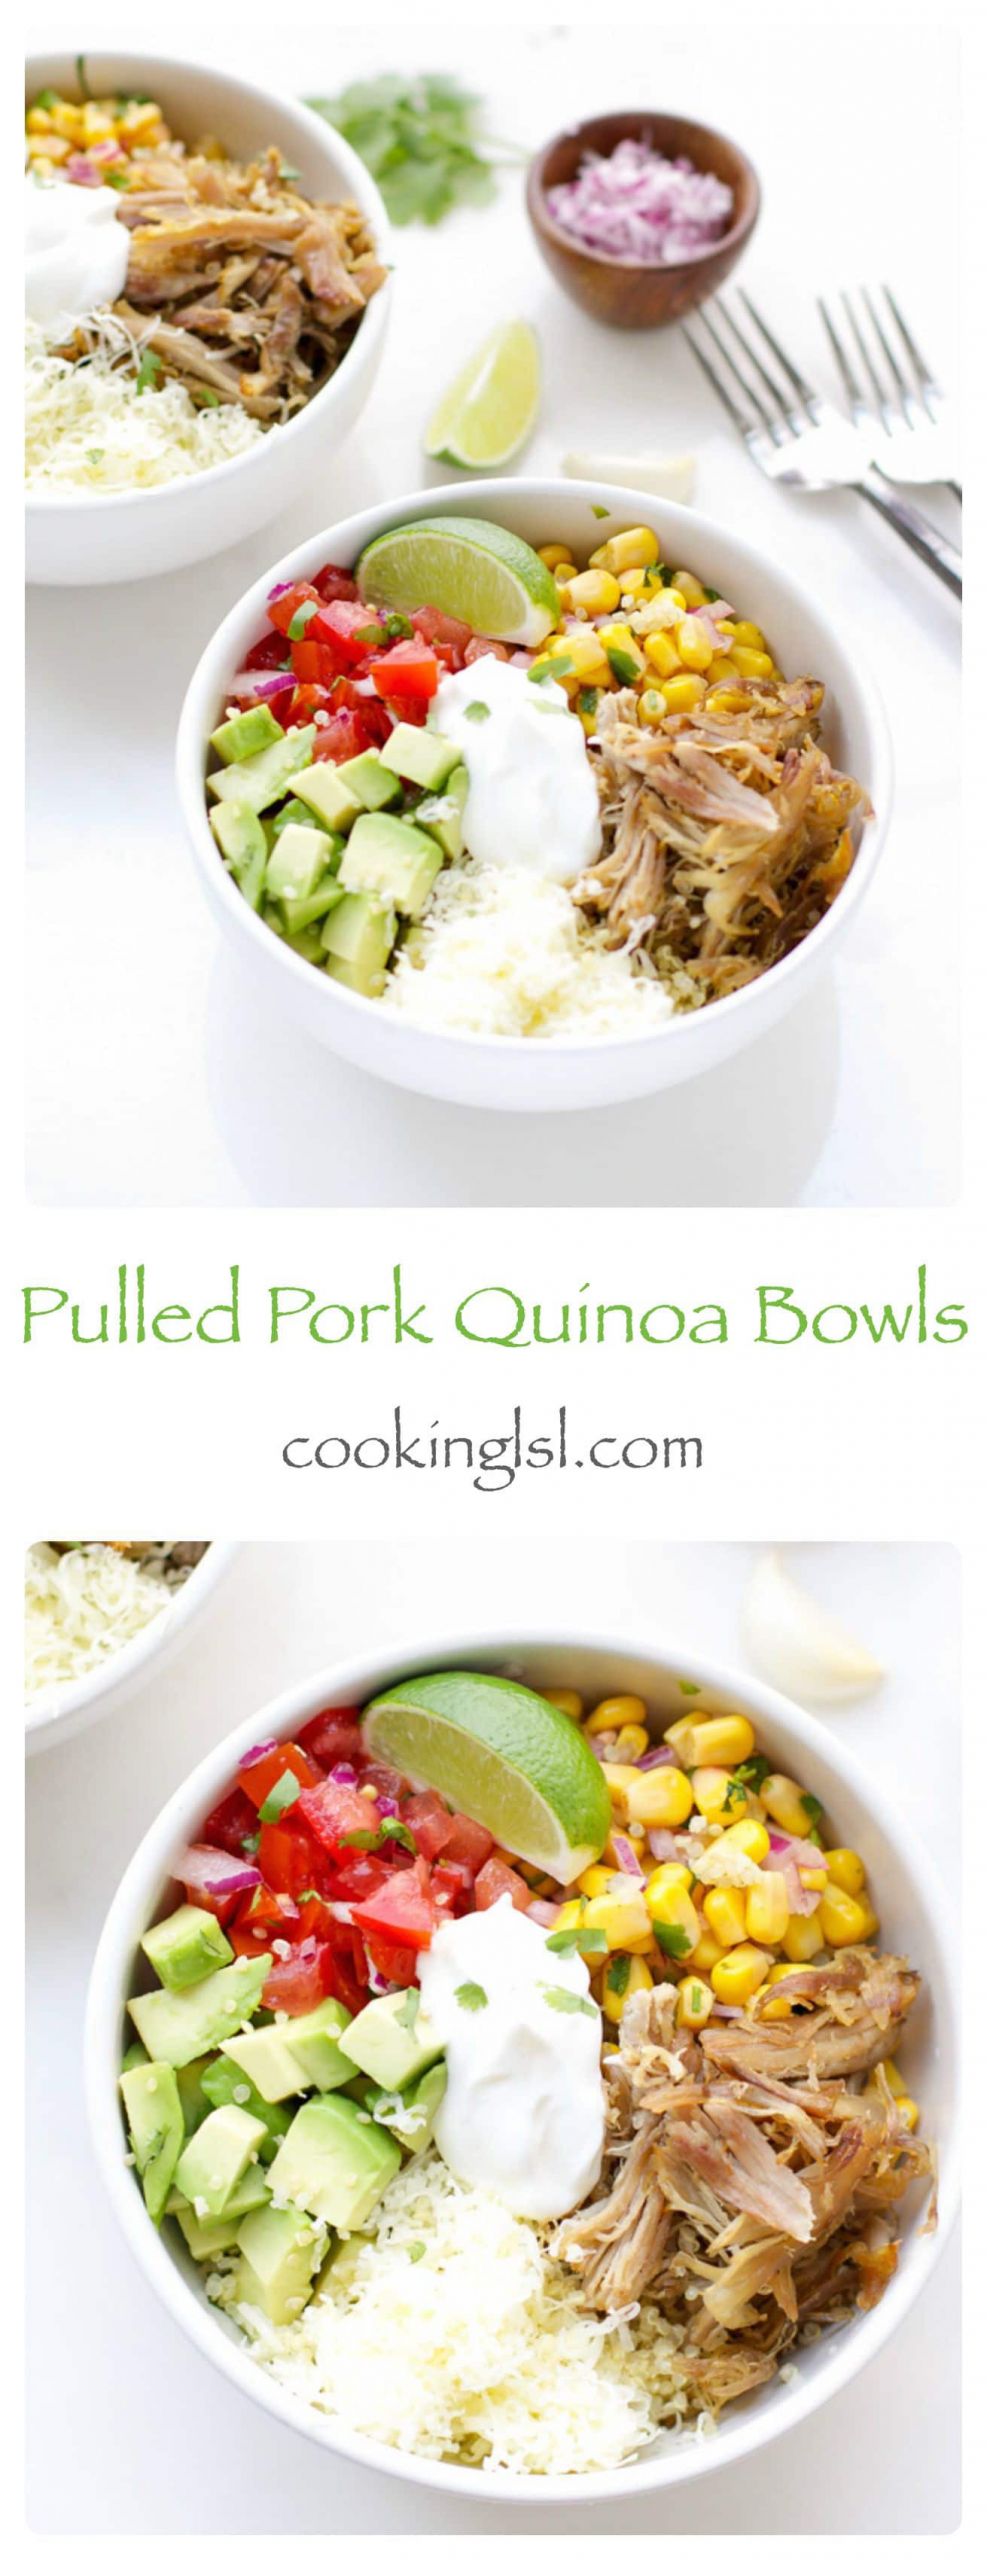 Quinoa Dinner Ideas
 Easy Dinner Ideas Pulled Pork Quinoa Bowls